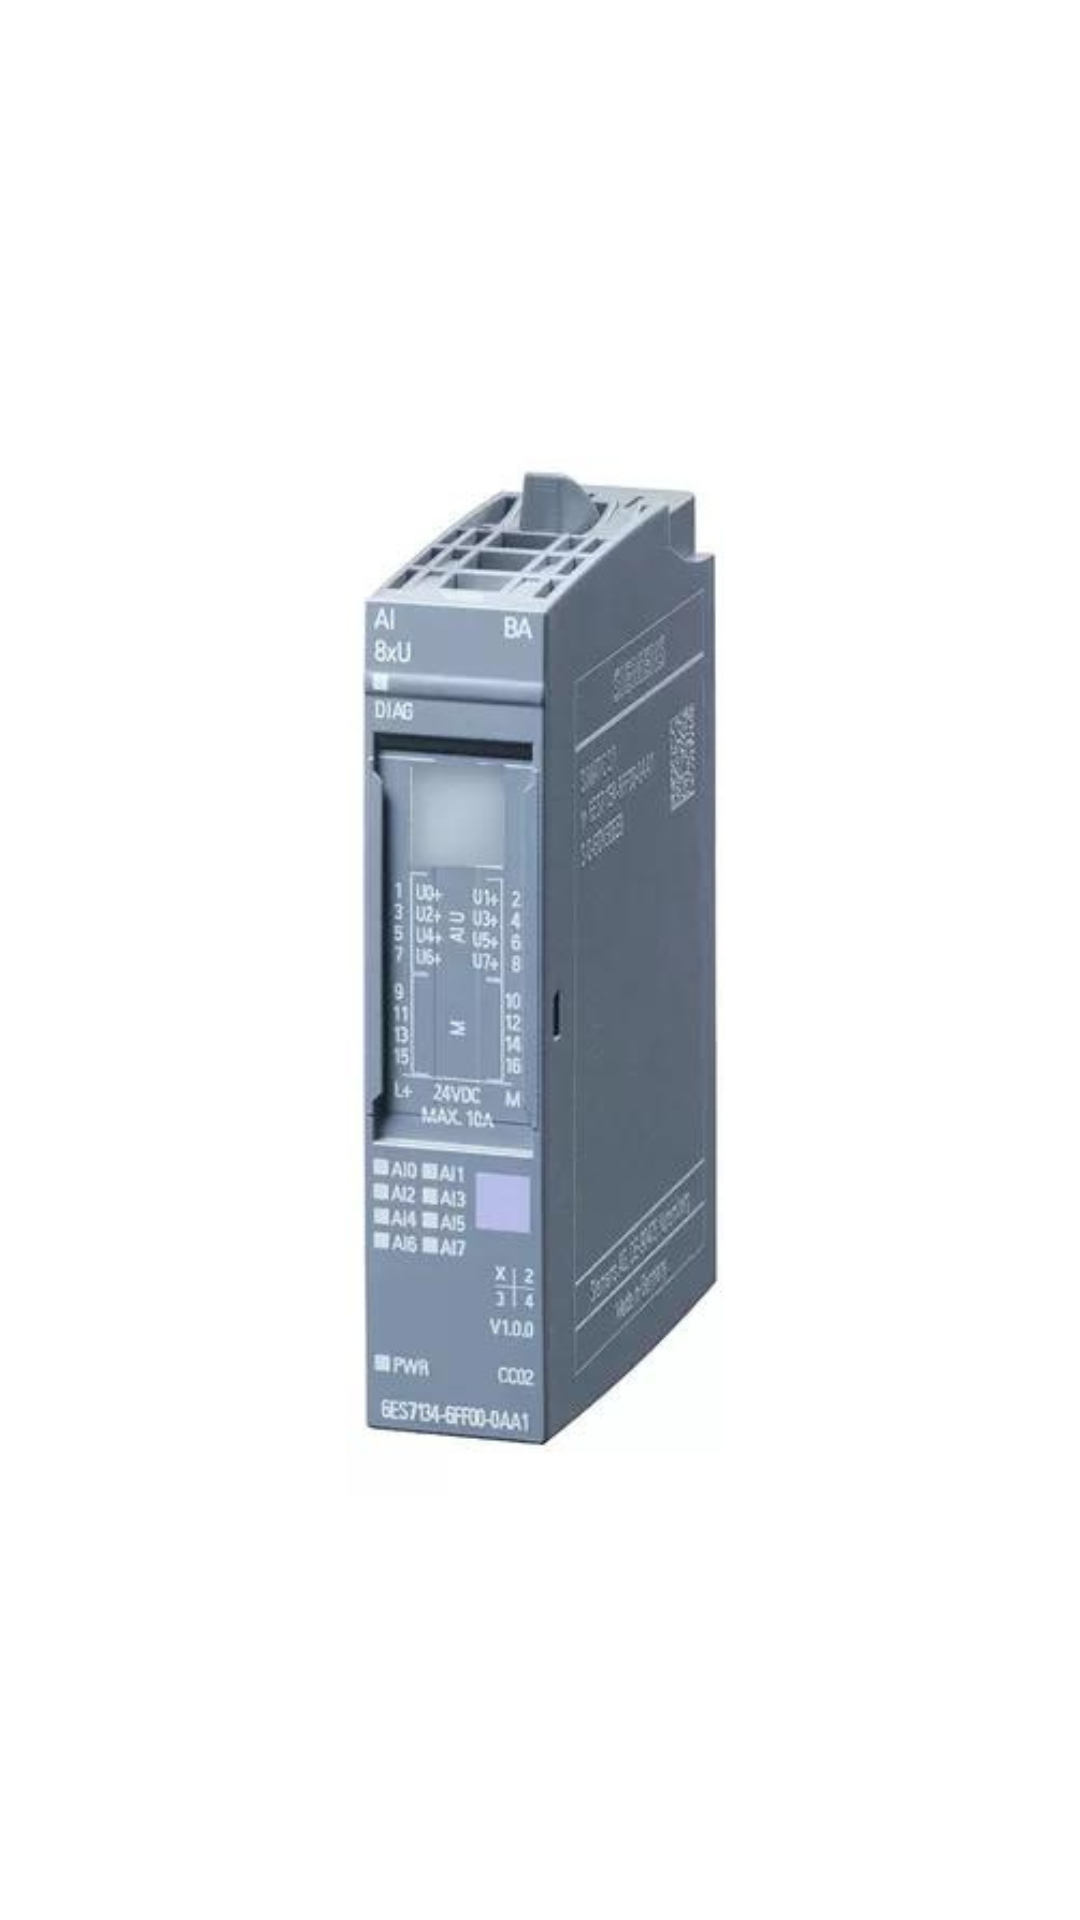 6ES7134-6FF00-0AA1 Siemens SIMATIC ET 200SP, digital output module , AI 8XU Basic, suitable for BU type A0, A1, Color code CC02, Module diagnostics, 16 bit